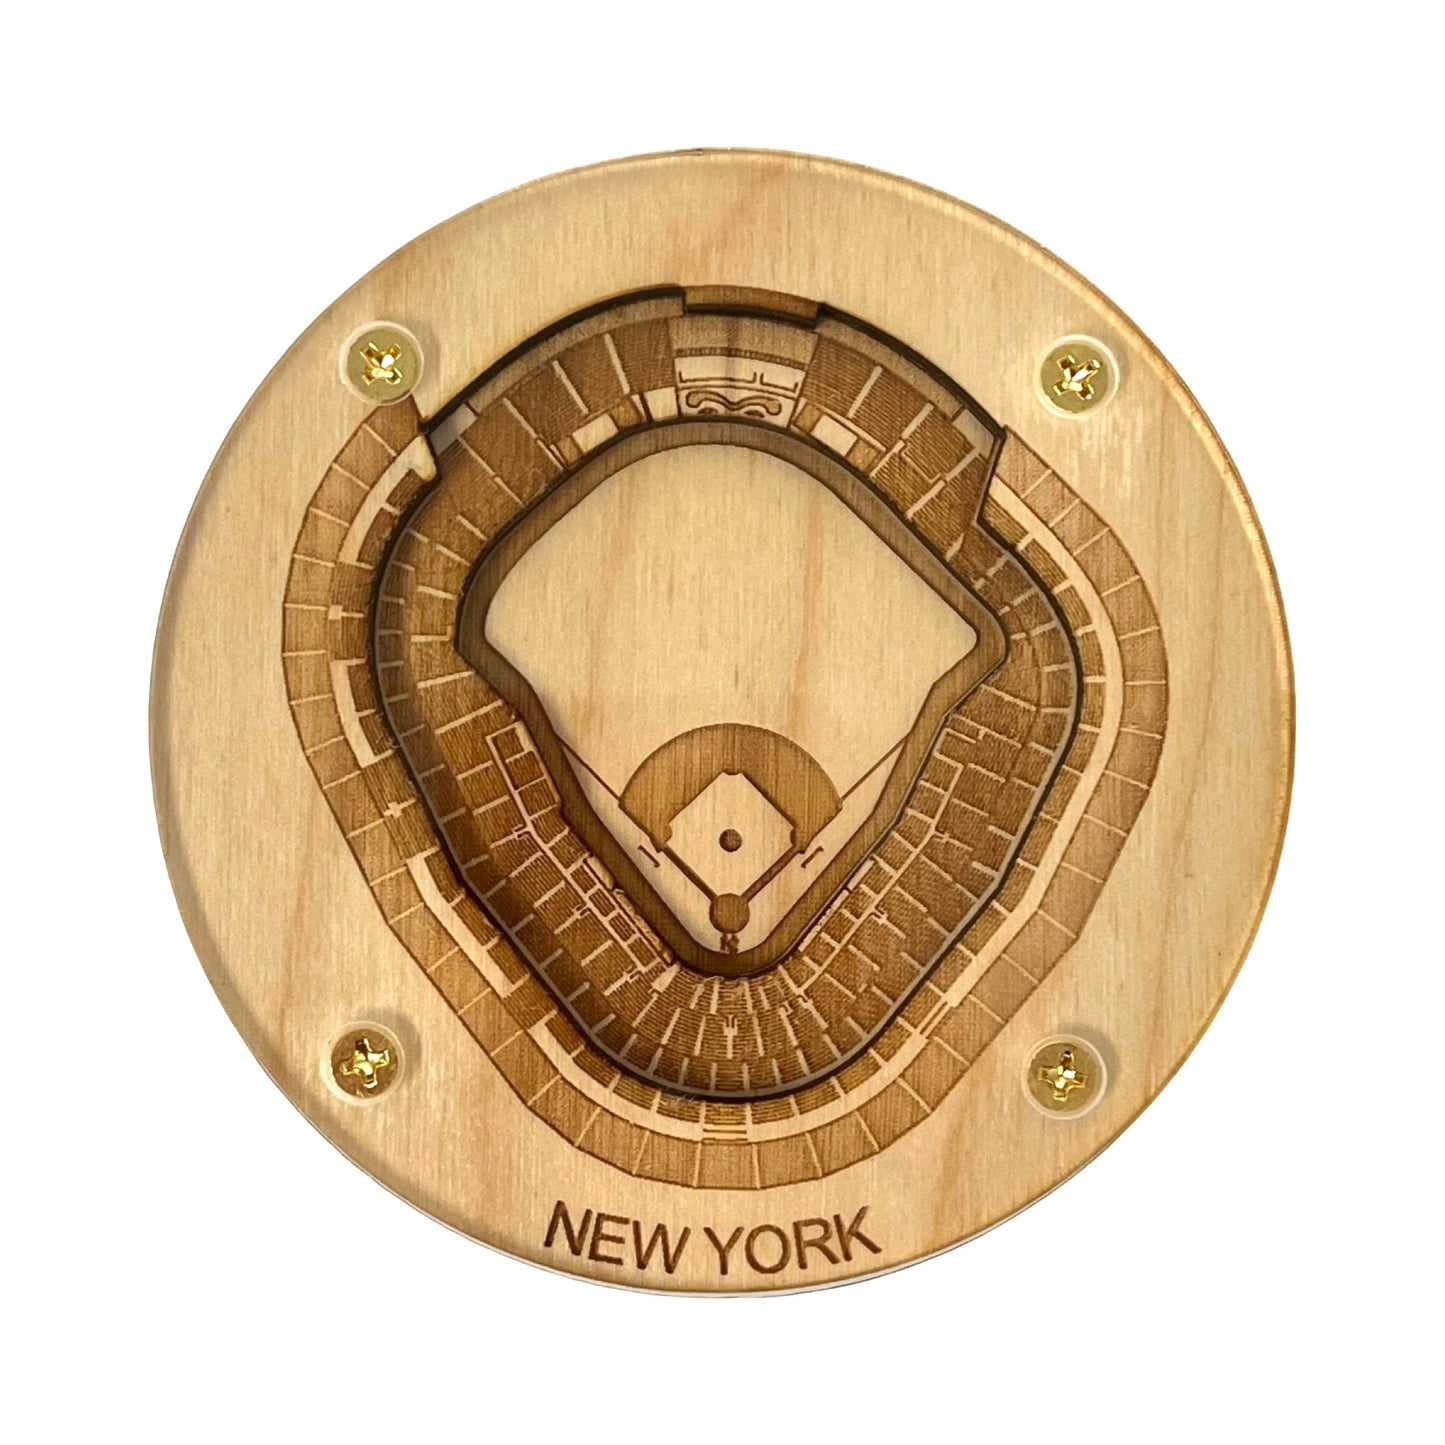 Bronx, New York Coaster Art (Yankee Stadium)